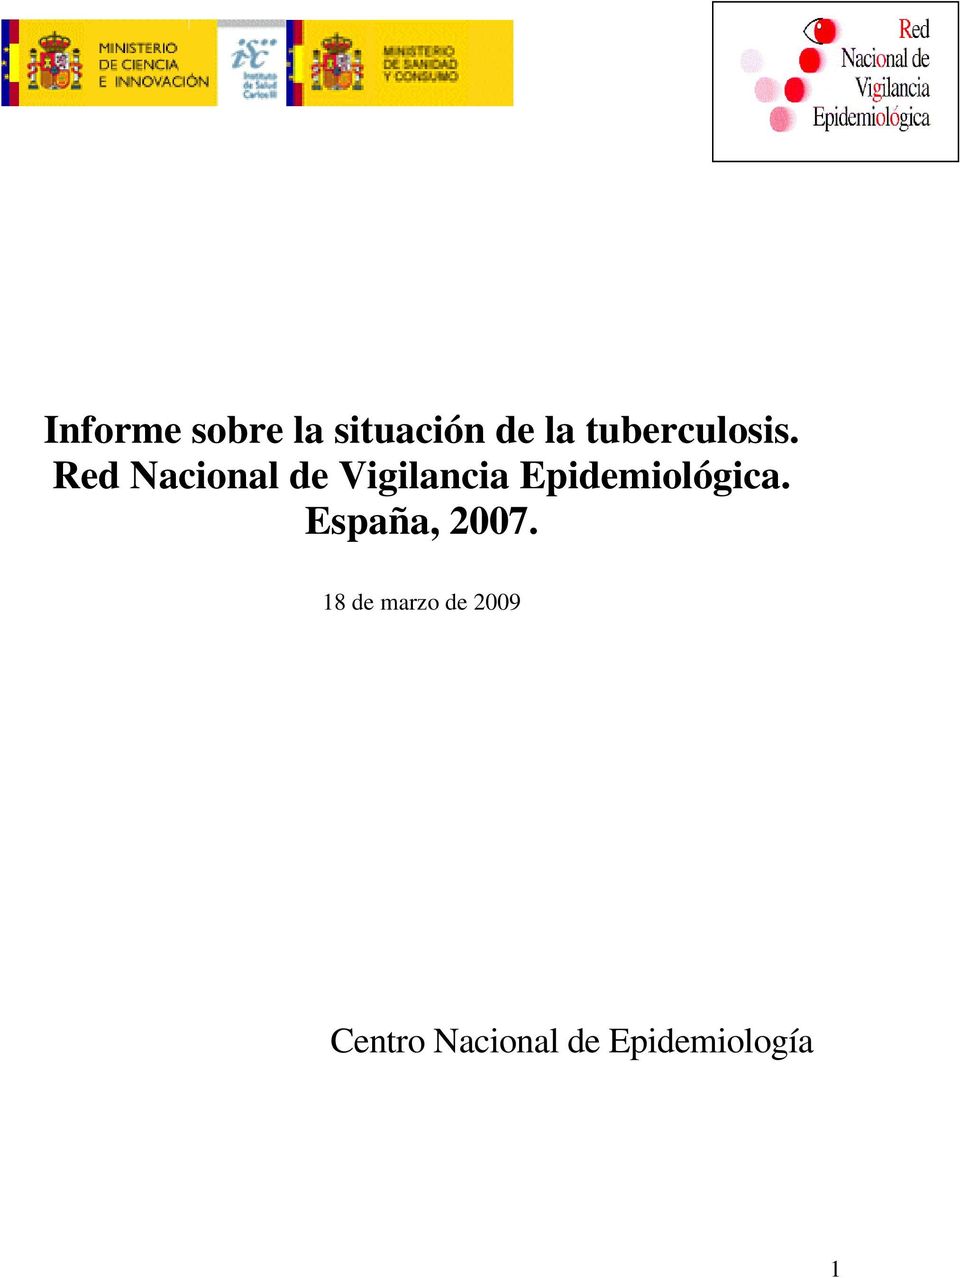 Red Nacional de Vigilancia